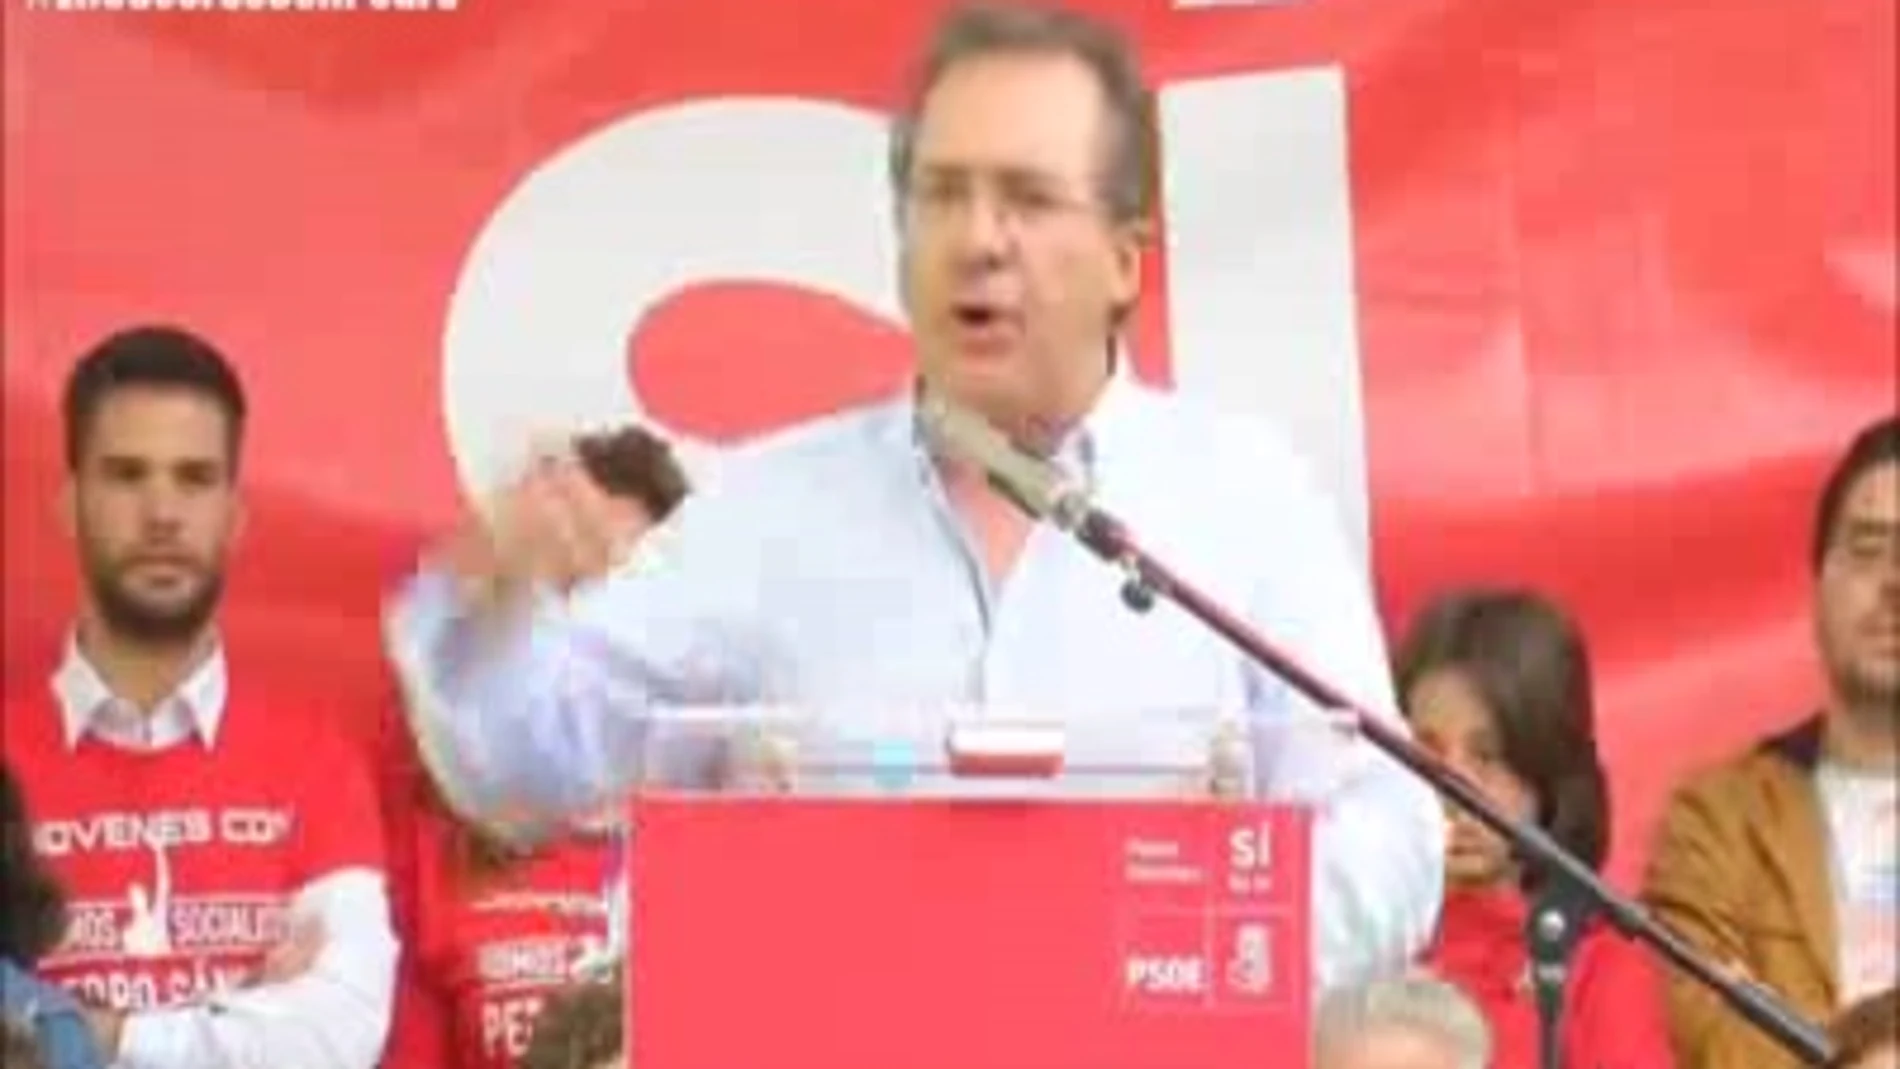 El alcalde socialista de Casar de Cáceres, partidario de que Cataluña sea nación «o como quieran ellos llamarse»